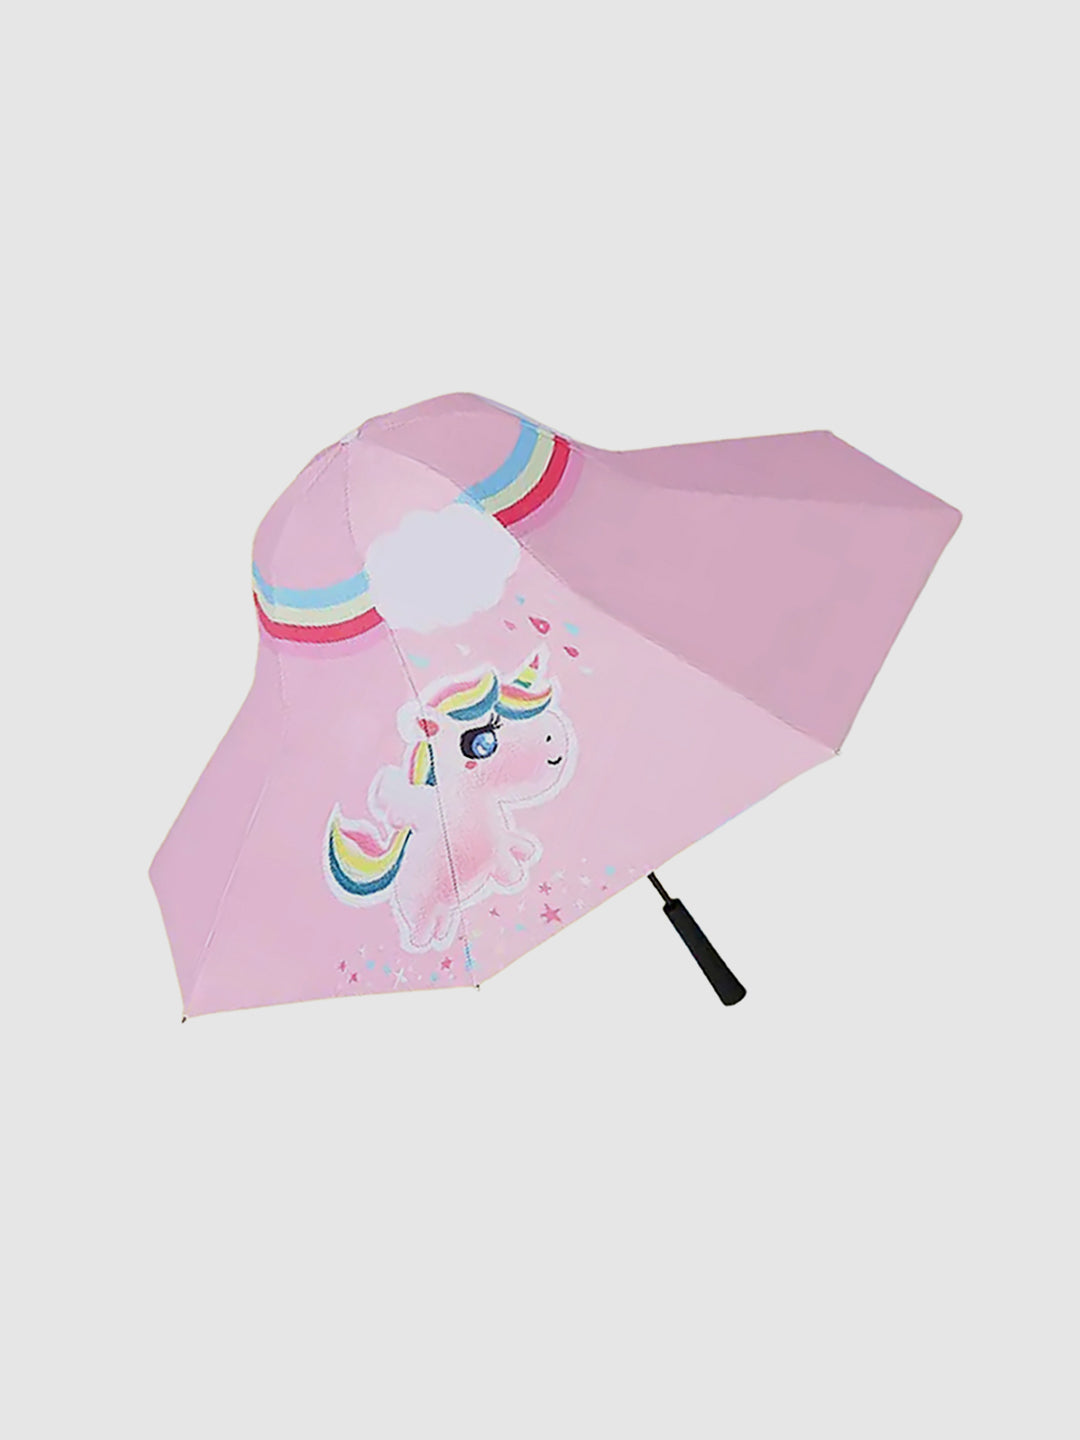 Little Surprise Box Unique Spanish Patio Style Kids Umbrella - LSB-UM-Patio-Rainbowunipink